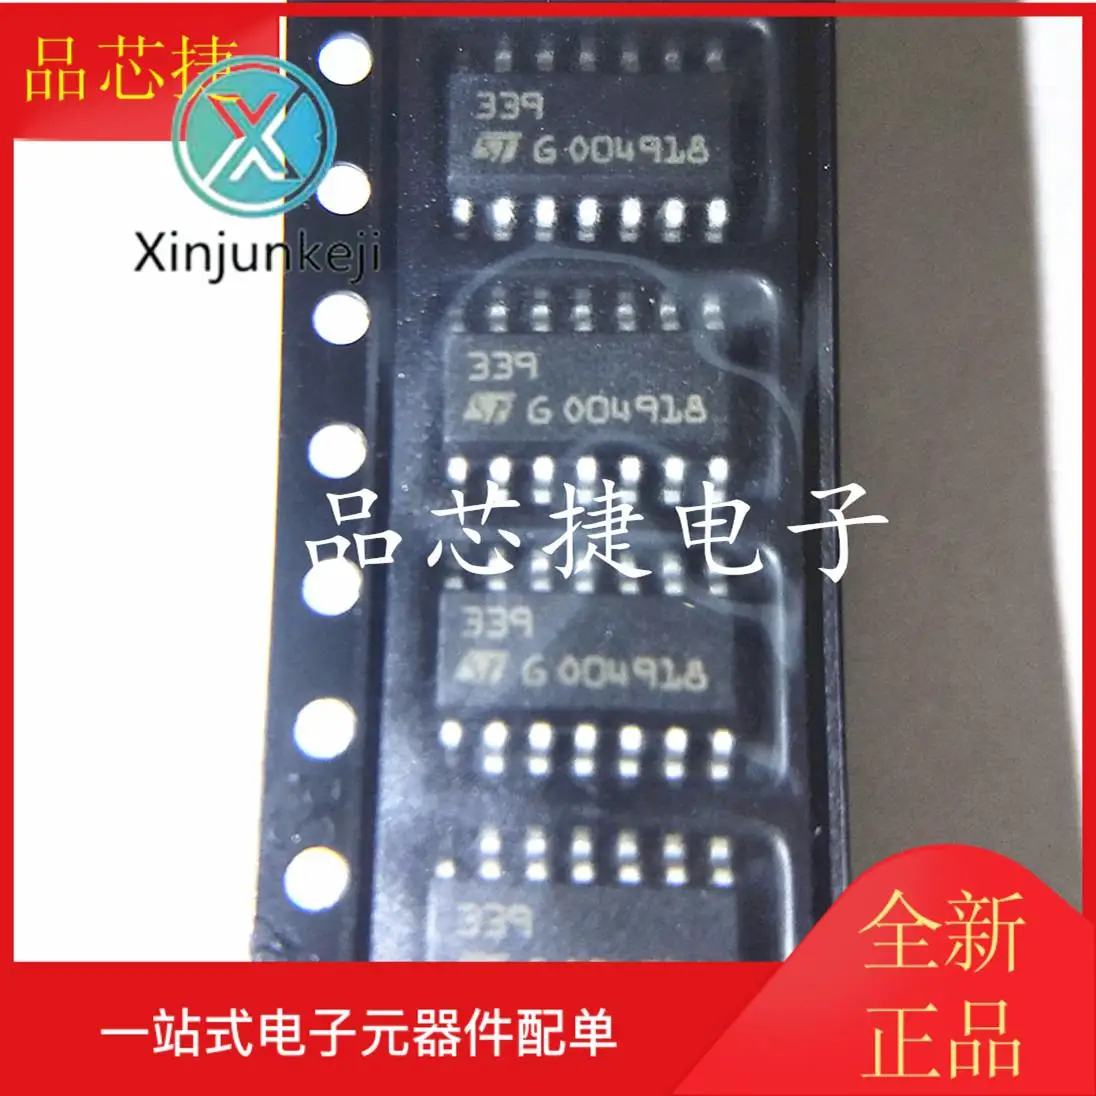 

20 шт. Оригинальный Новый LM339DT LM339D Шелковый экран 339 SOP14 аналоговый КОМПАРАТОР IC чип